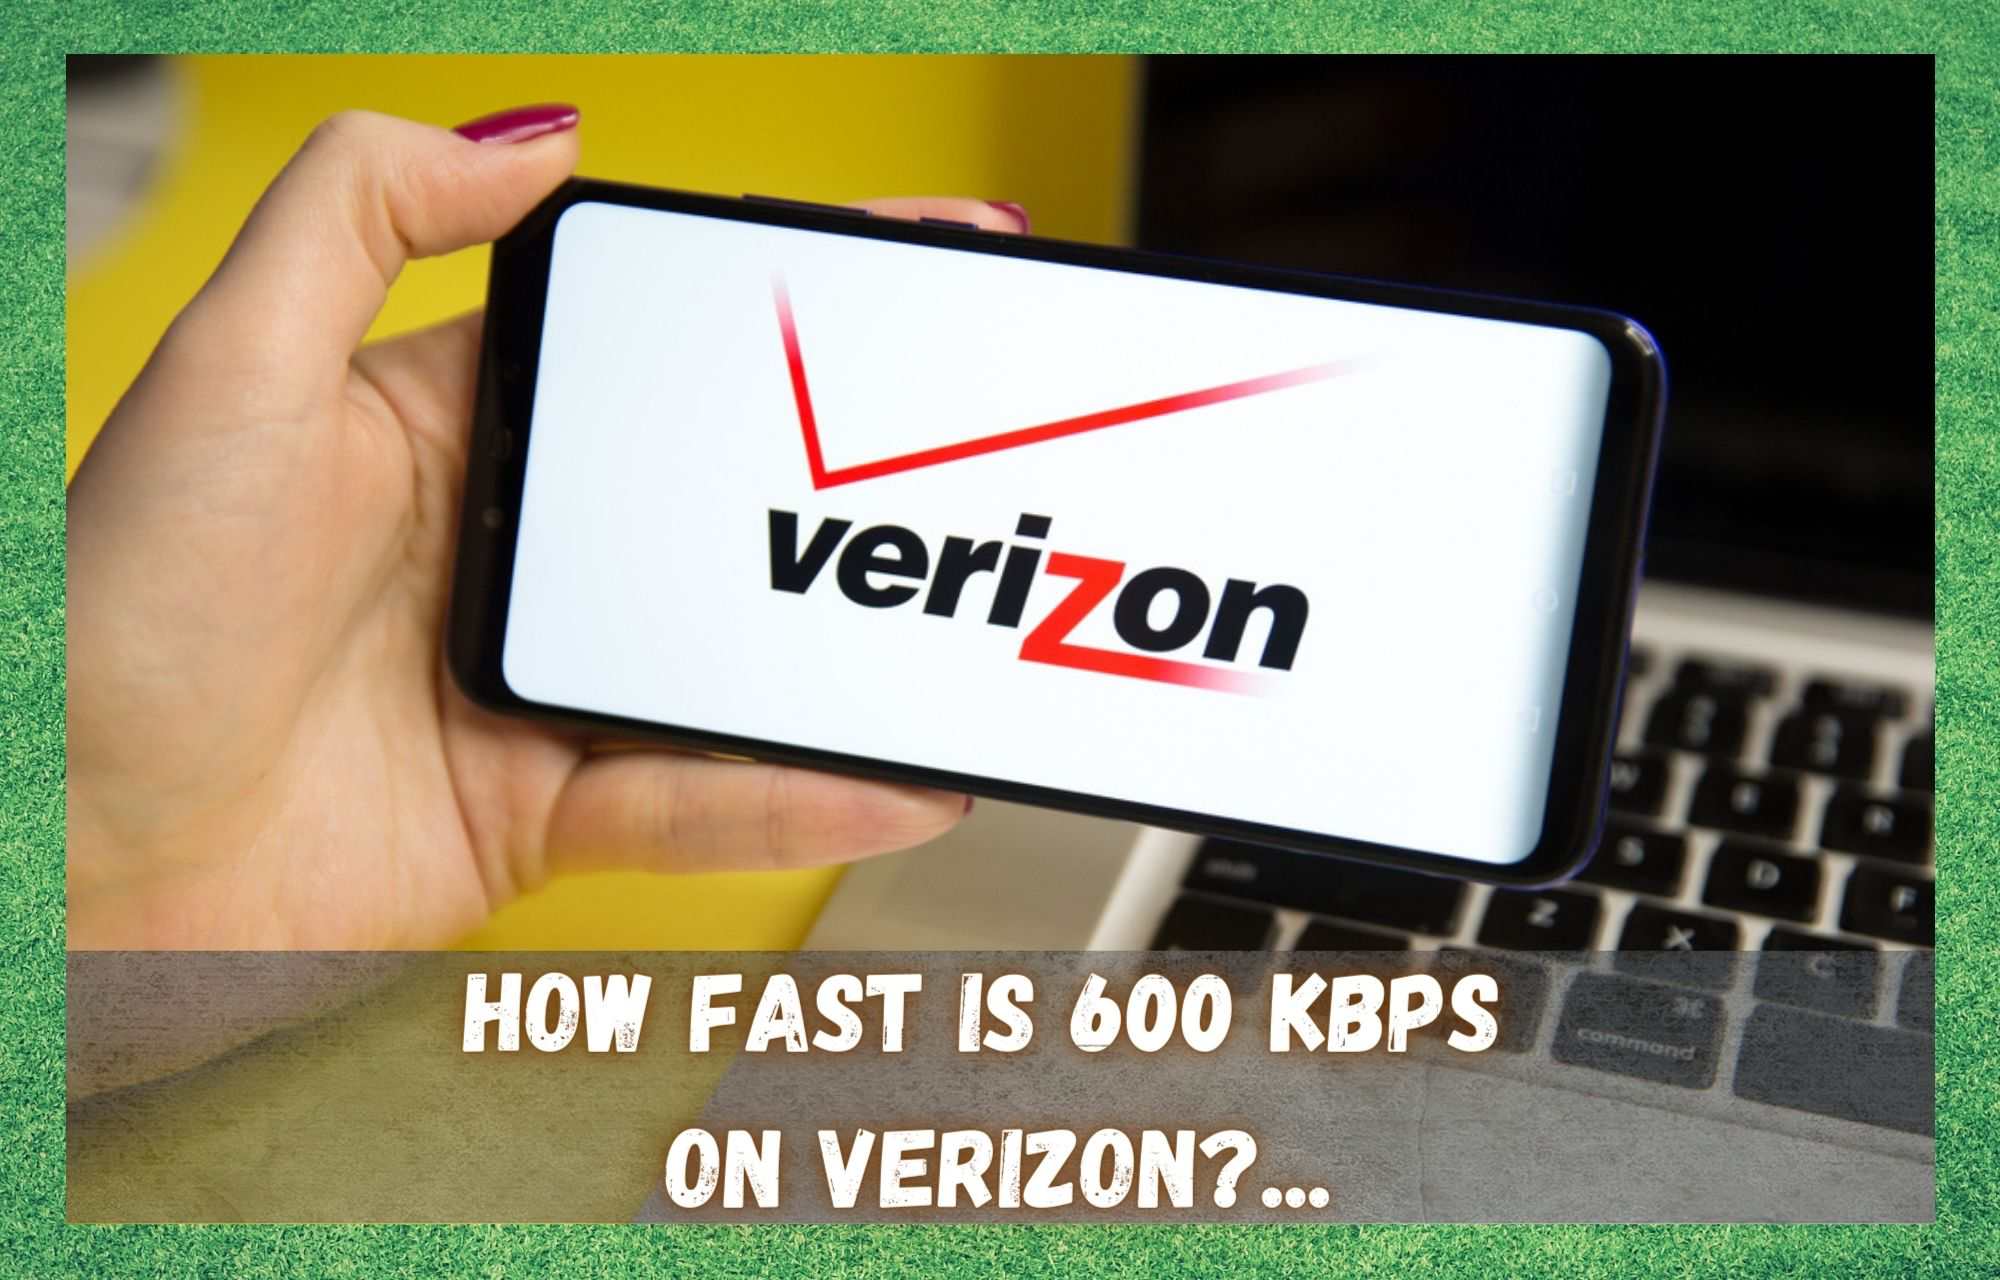 Verizon - कति छिटो छ 600 Kbps? (व्याख्या गरिएको)